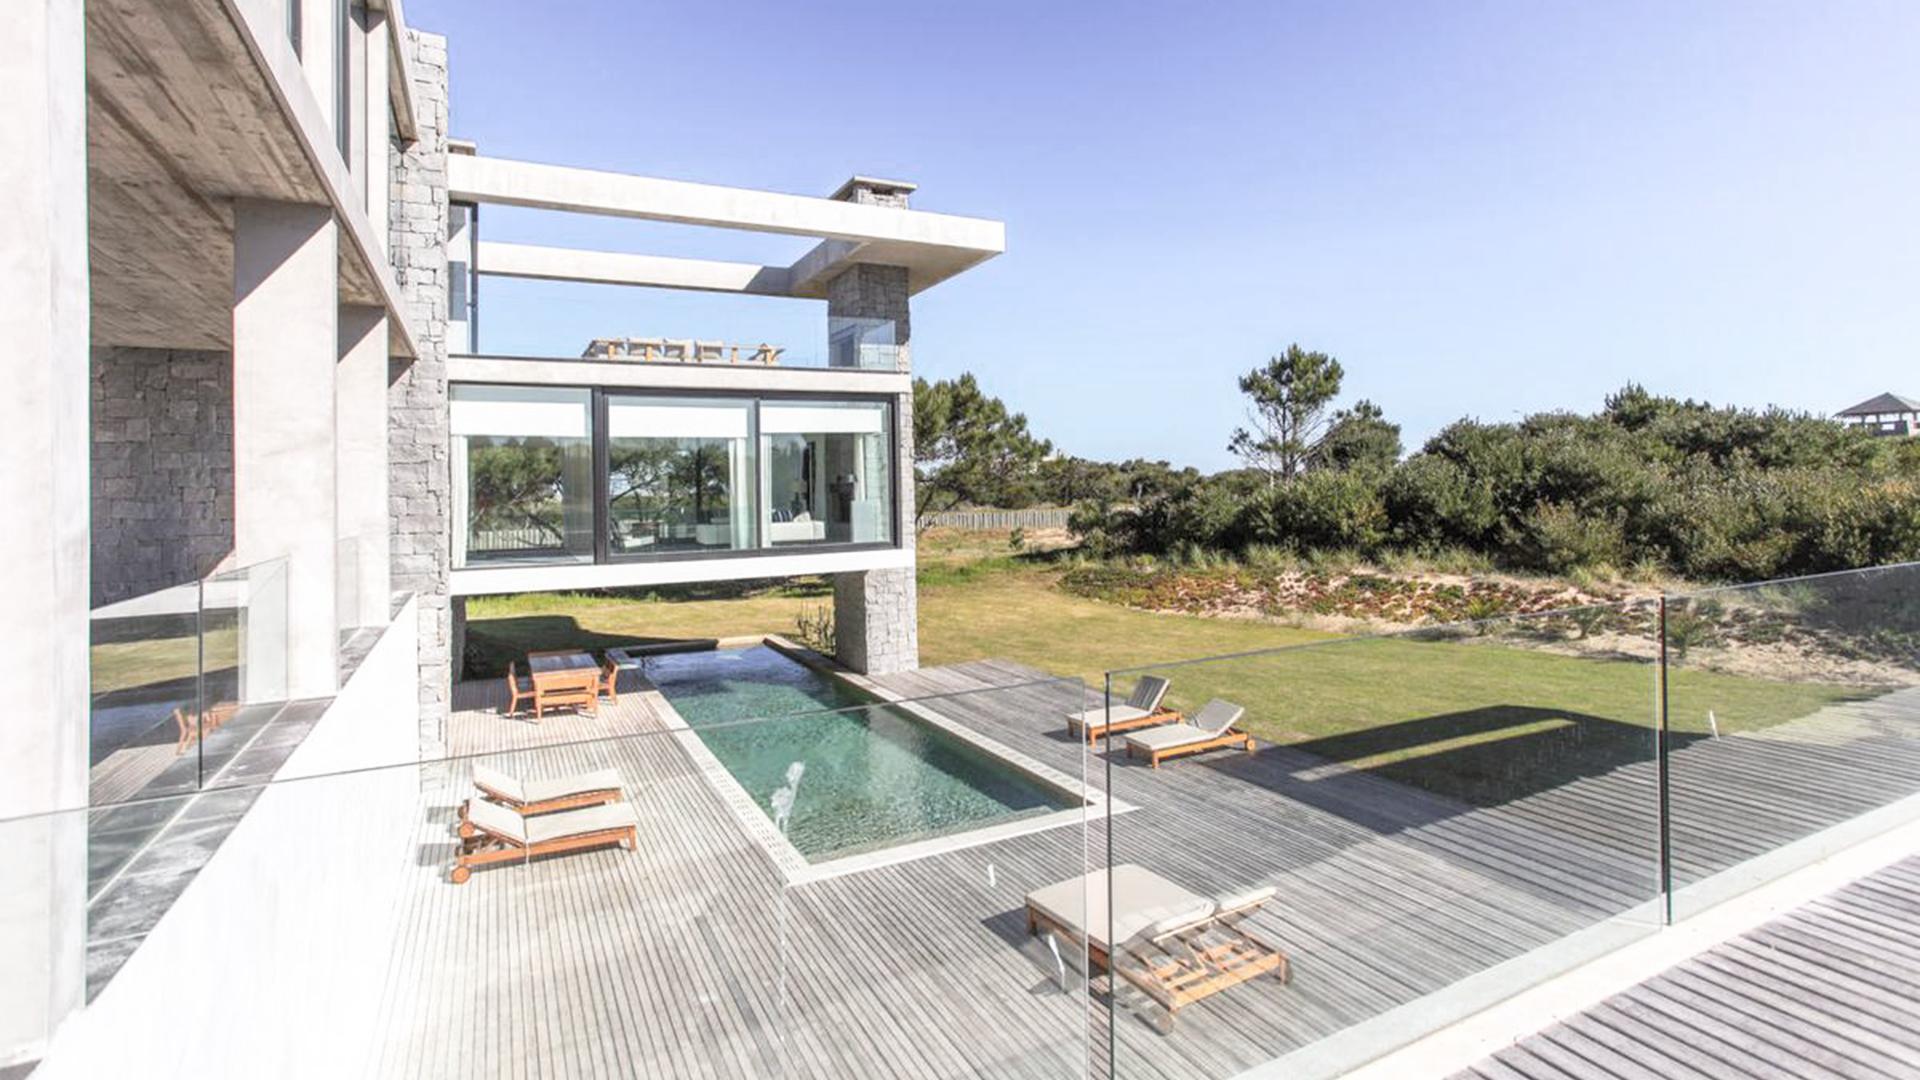 Luxury Ocean-View Villa in Private Neighborhood  located in Jose Ignacio, Punta del Este, Uruguay, listed by Curiocity Villas.